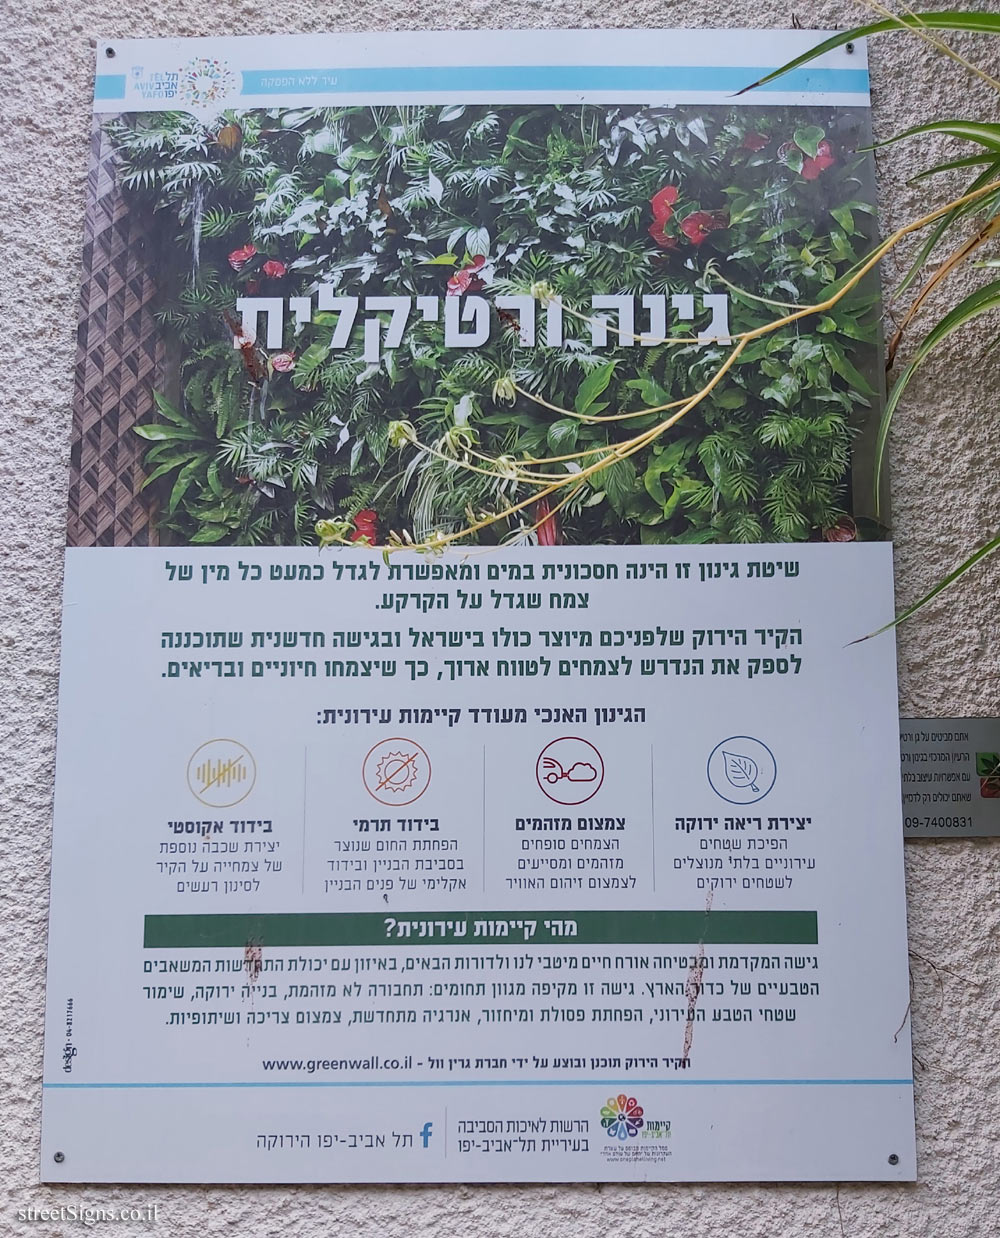 Tel Aviv - A vertical garden